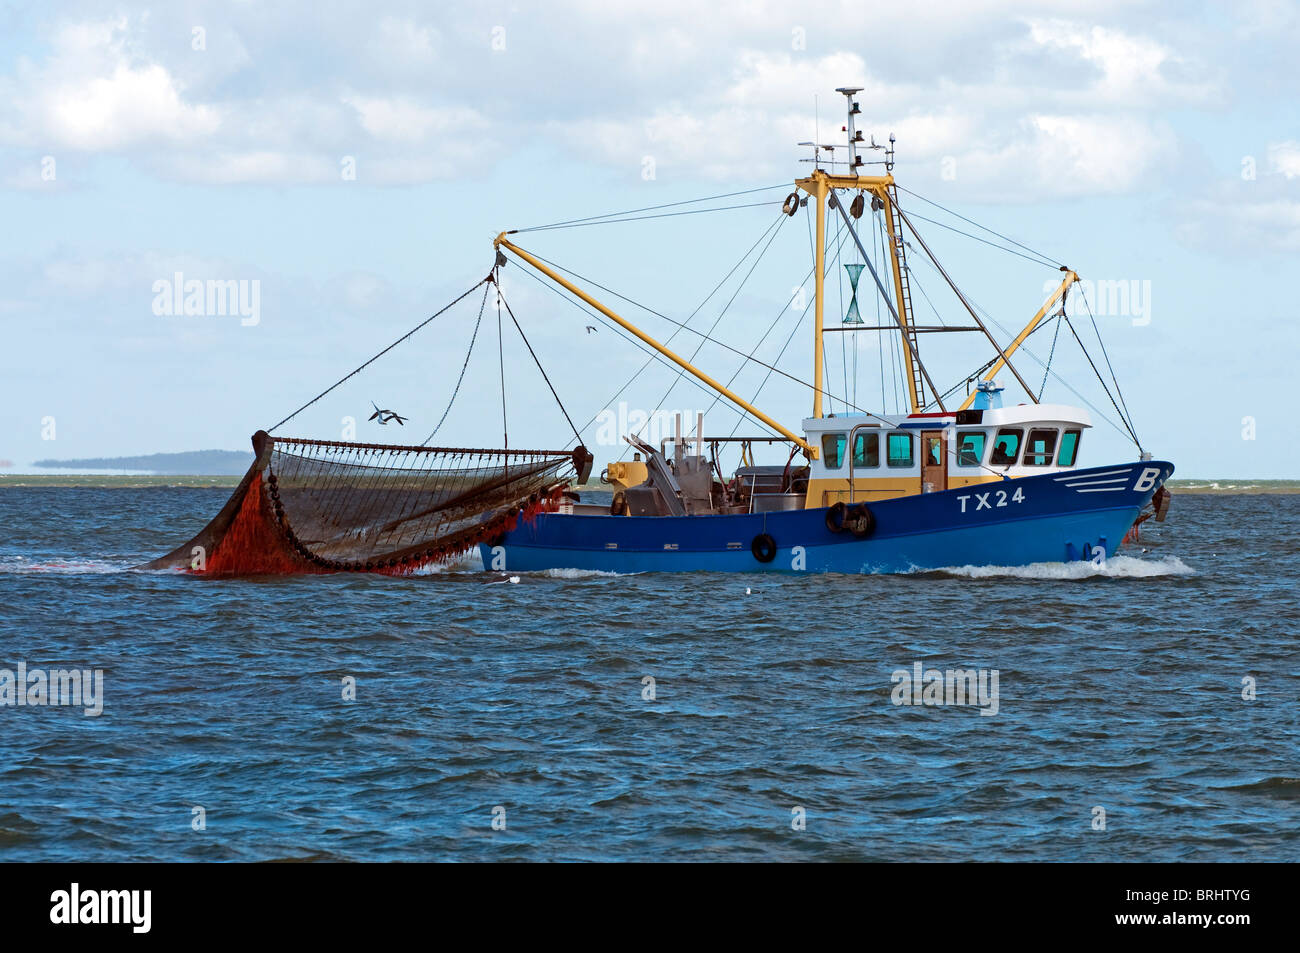 Arrastrero dragnet con la pesca en el mar, Texel, en los Países Bajos Foto de stock